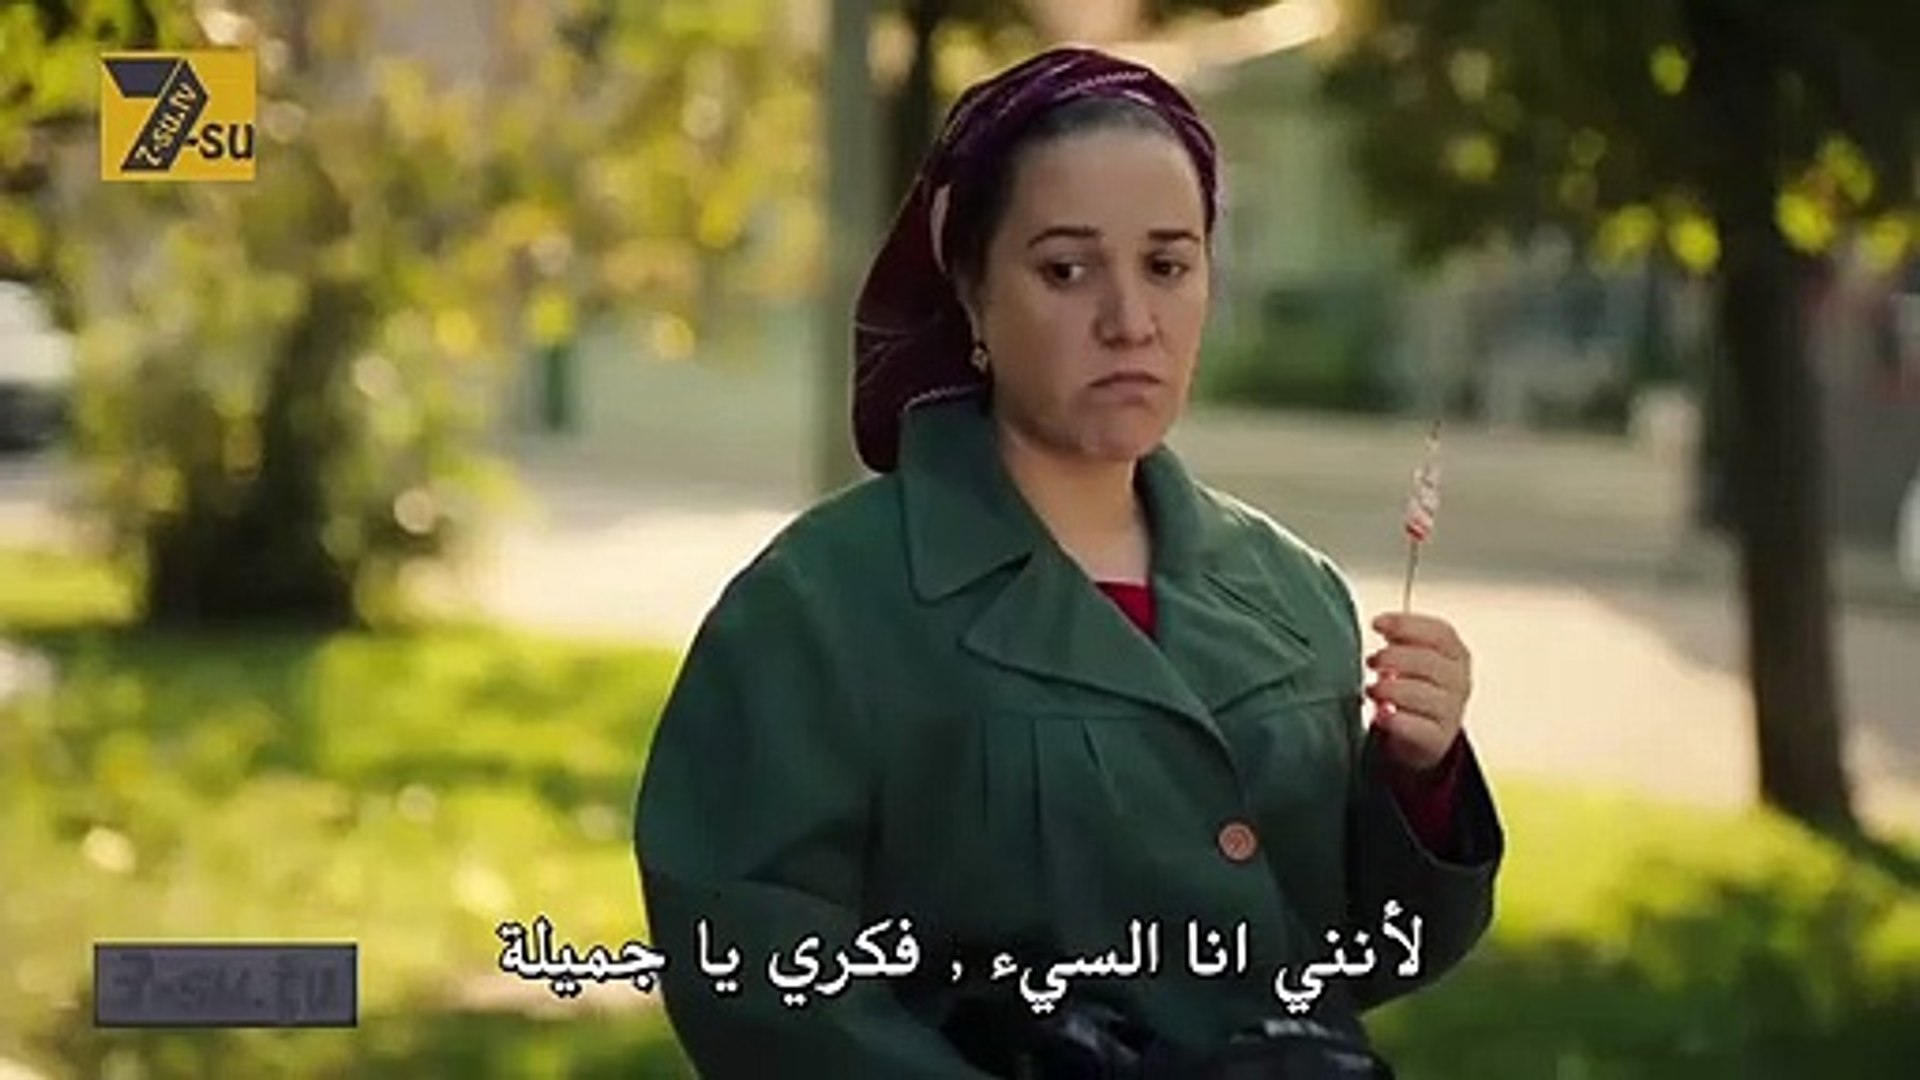 مسلسل يا اسطنبول الحلقة 18 مترجم للعربية - video Dailymotion